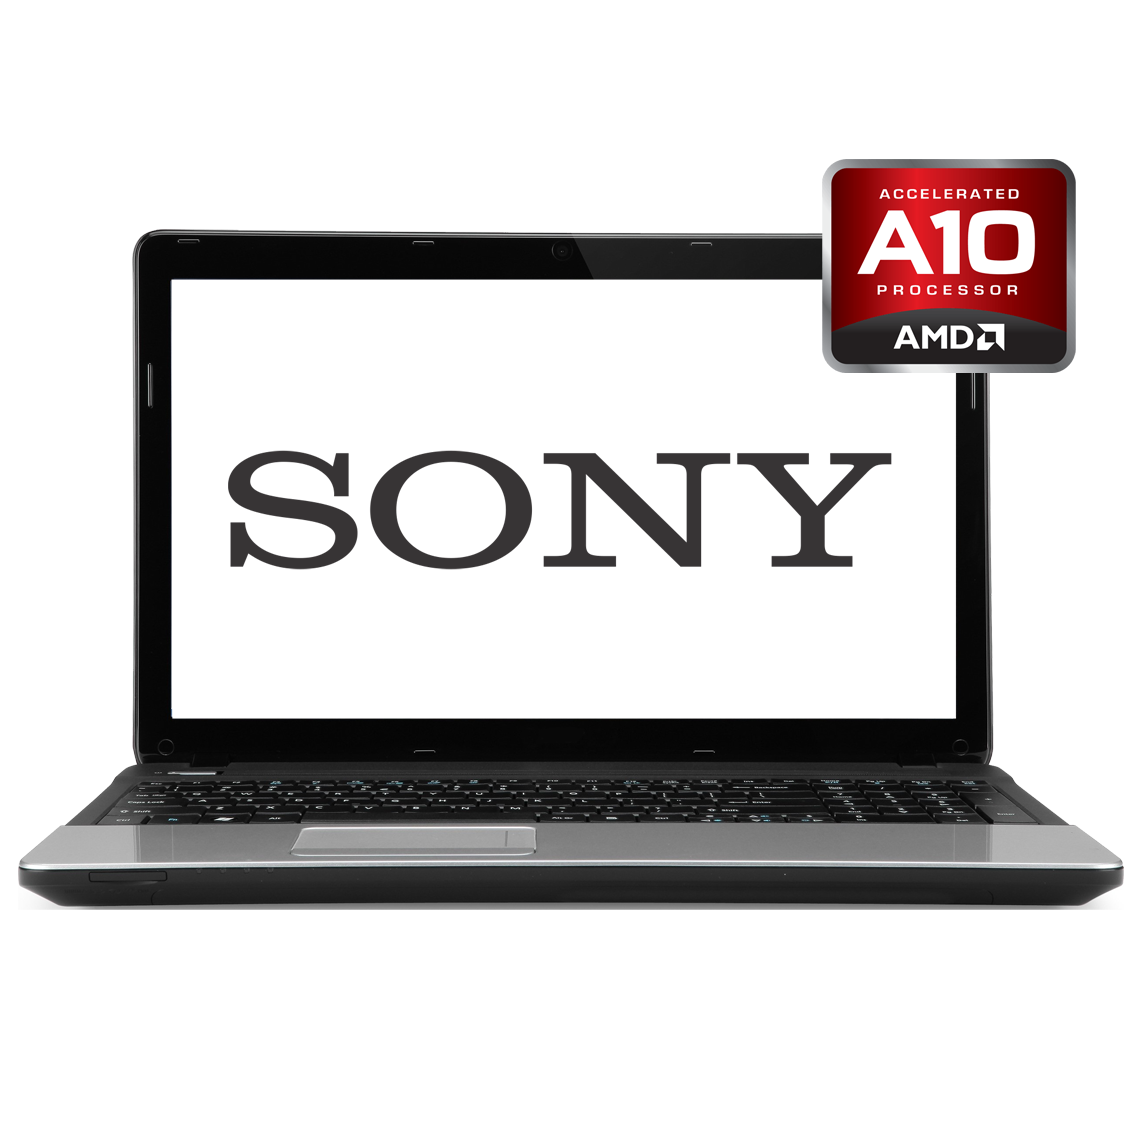 Sony - 17.3 inch AMD A10